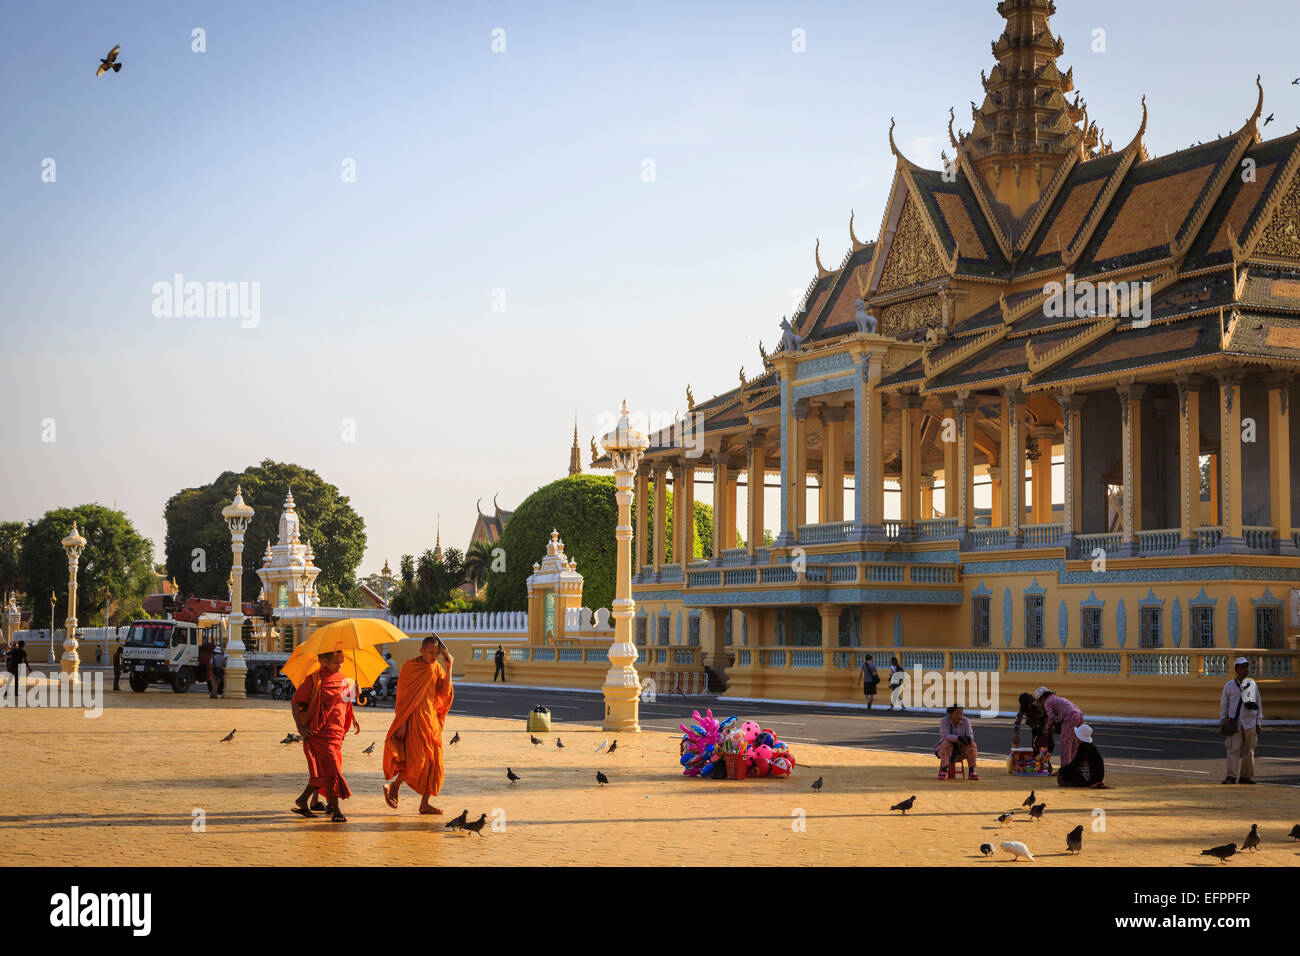 Les moines bouddhistes, sur une place en face du Palais Royal, Phnom Penh, Cambodge. Banque D'Images